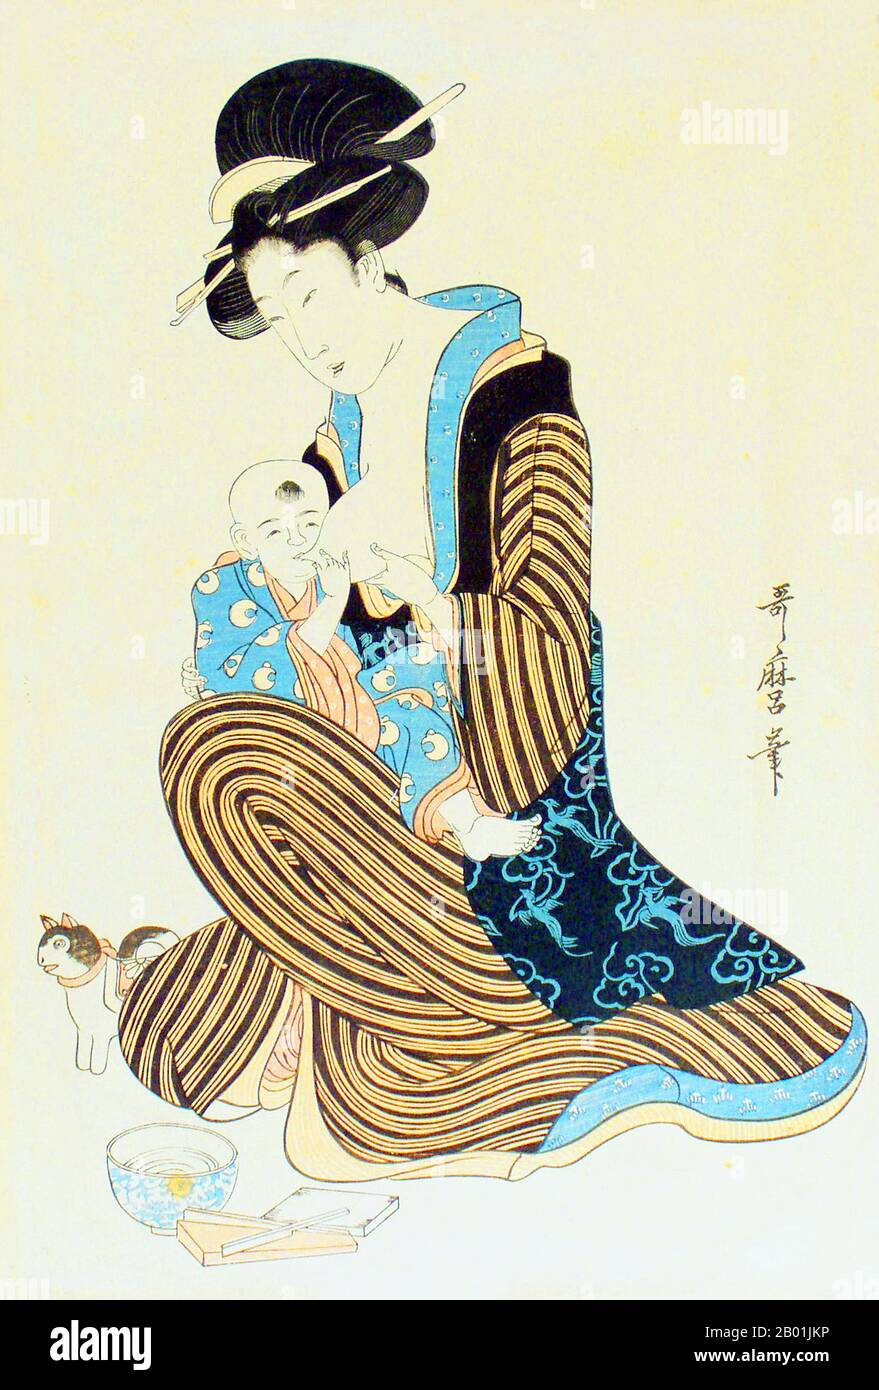 Japon : Femme allaitant un nourrisson. Bloc de bois Ukiyo-e de Kitagawa Utamaro (c. 1753 - 31 octobre 1806), fin du 18e siècle. Kitagawa Utamaro était un graveur et peintre japonais, considéré comme l'un des plus grands artistes de gravures sur bois (ukiyo-e). Il est surtout connu pour ses études magistralement composées de femmes, connues sous le nom de bijinga. Il a également produit des études sur la nature, en particulier des livres illustrés d'insectes. Banque D'Images